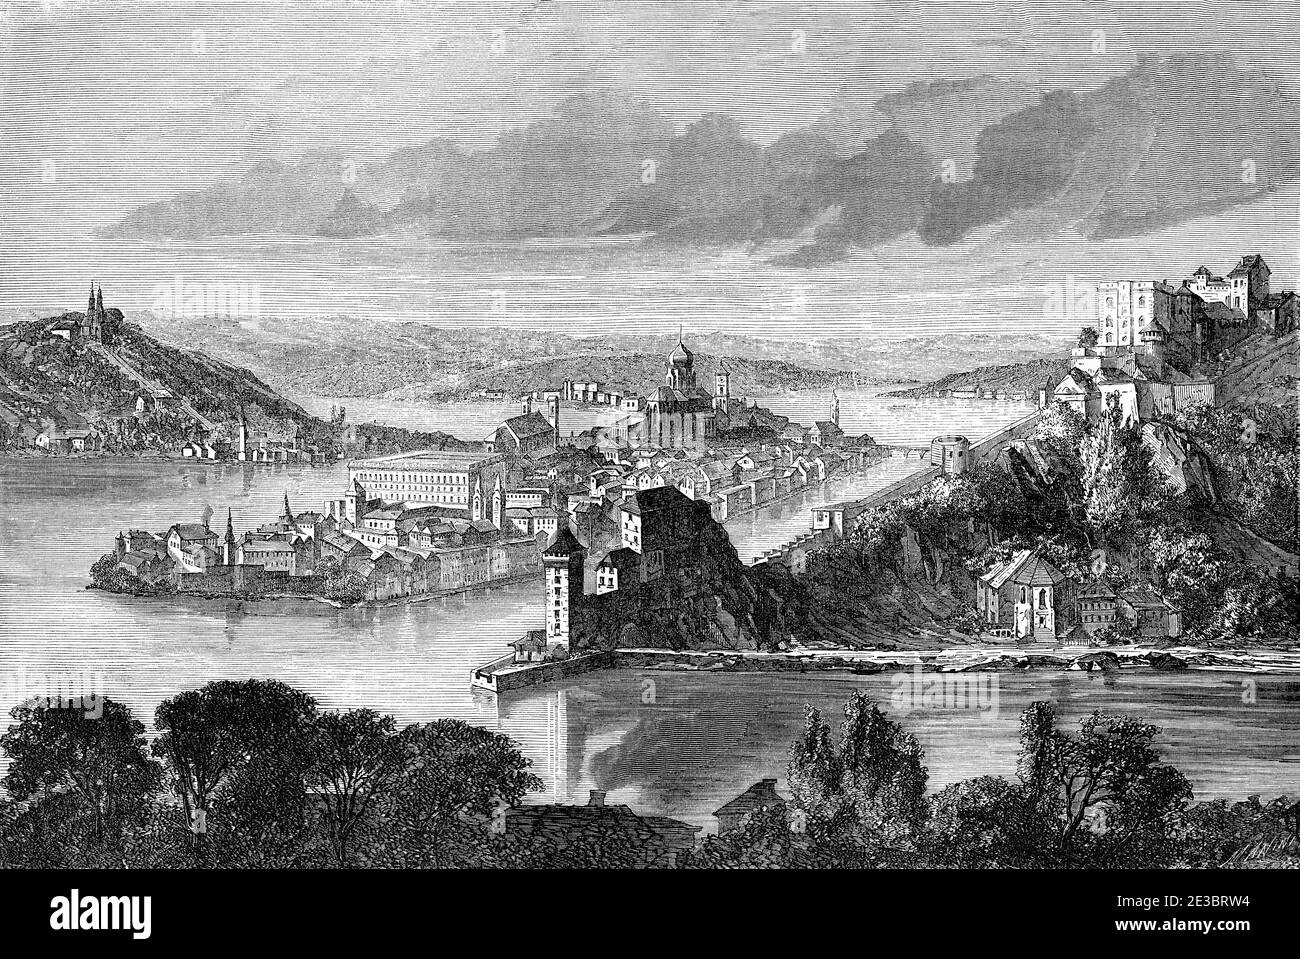 Blick auf Passau an der Donau, Niederbayern, Deutschland Europa. Alte gravierte Illustration aus dem 19. Jahrhundert, Le Tour du Monde 1863 Stockfoto